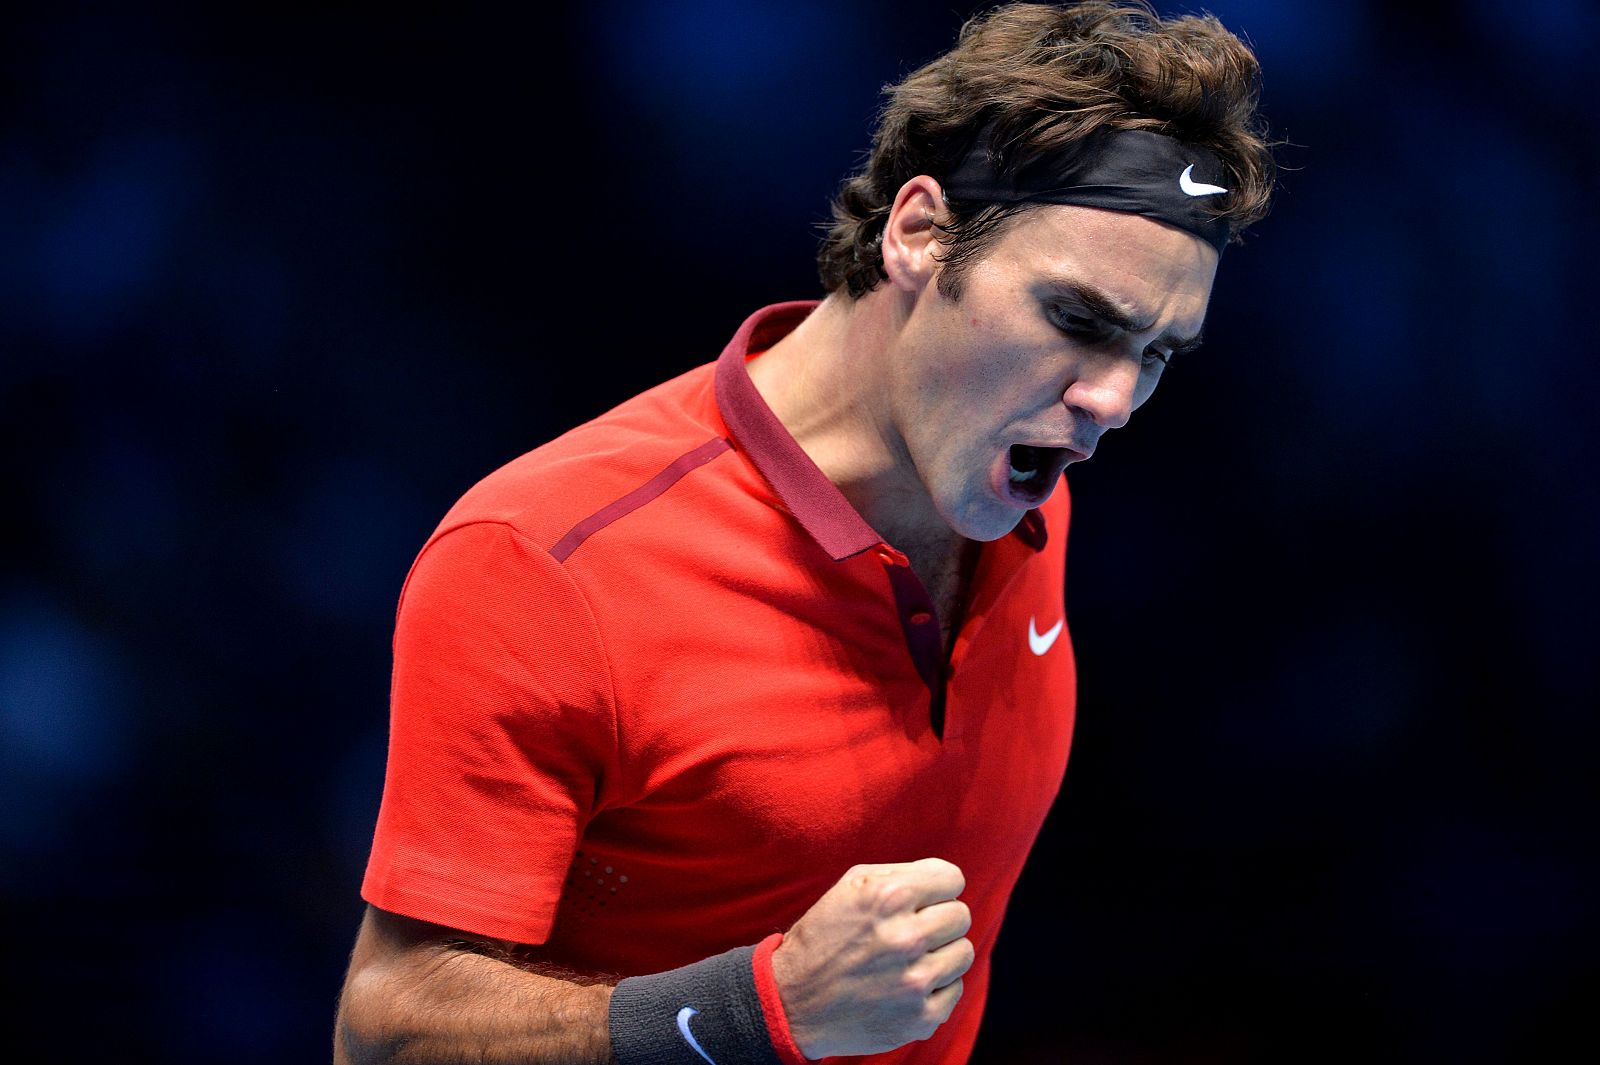 El suizo Roger Federer celebra un punto durante el partido.